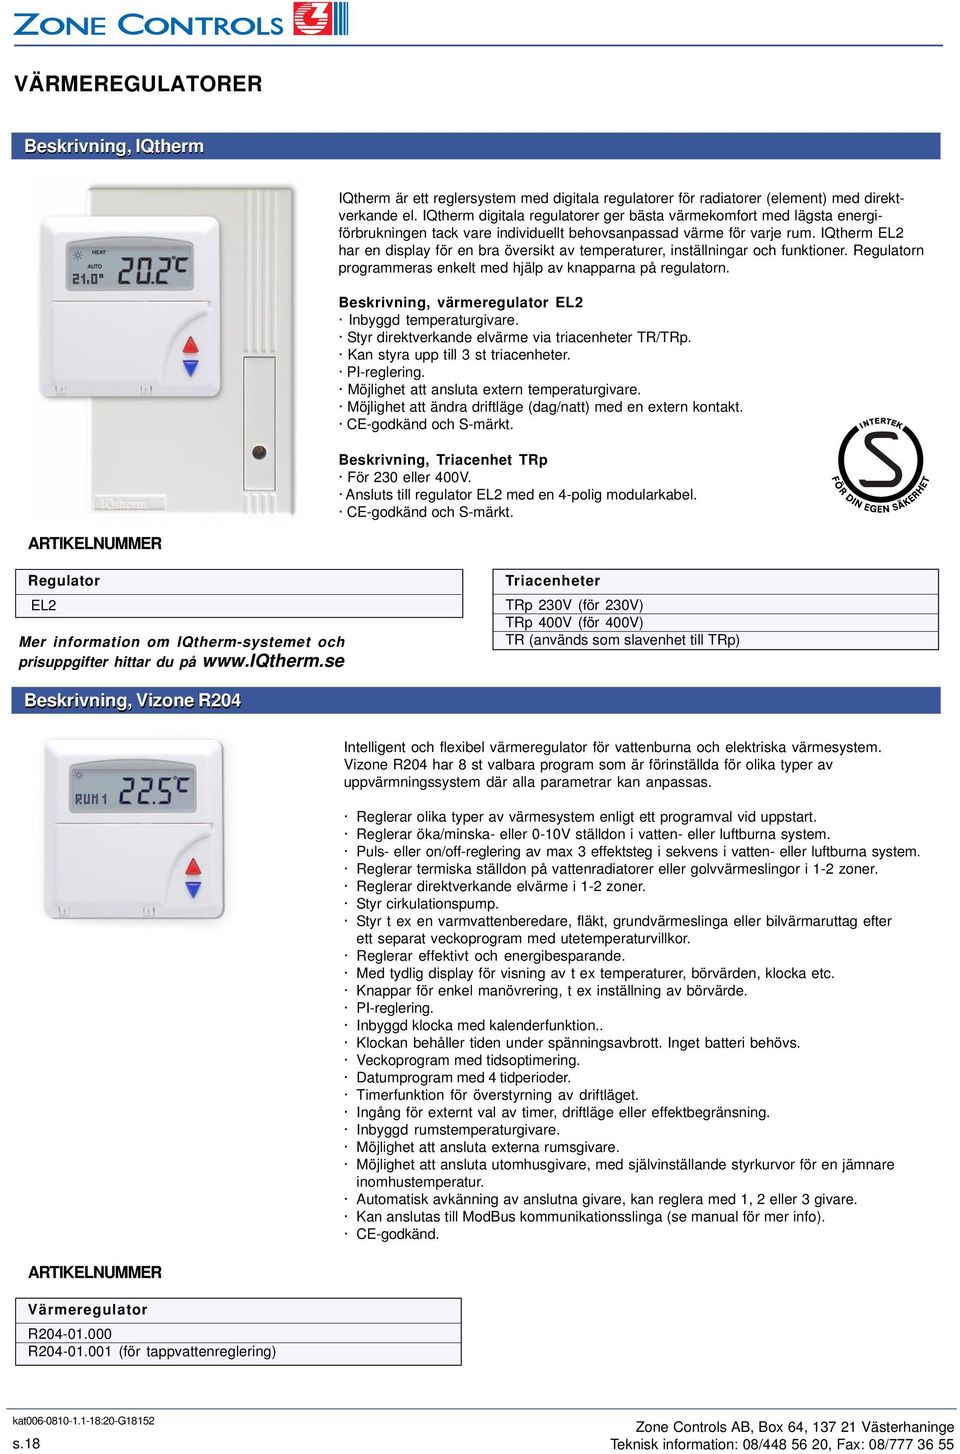 IQtherm EL2 har en display för en bra översikt av temperaturer, inställningar och funktioner. Regulatorn programmeras enkelt med hjälp av knapparna på regulatorn.